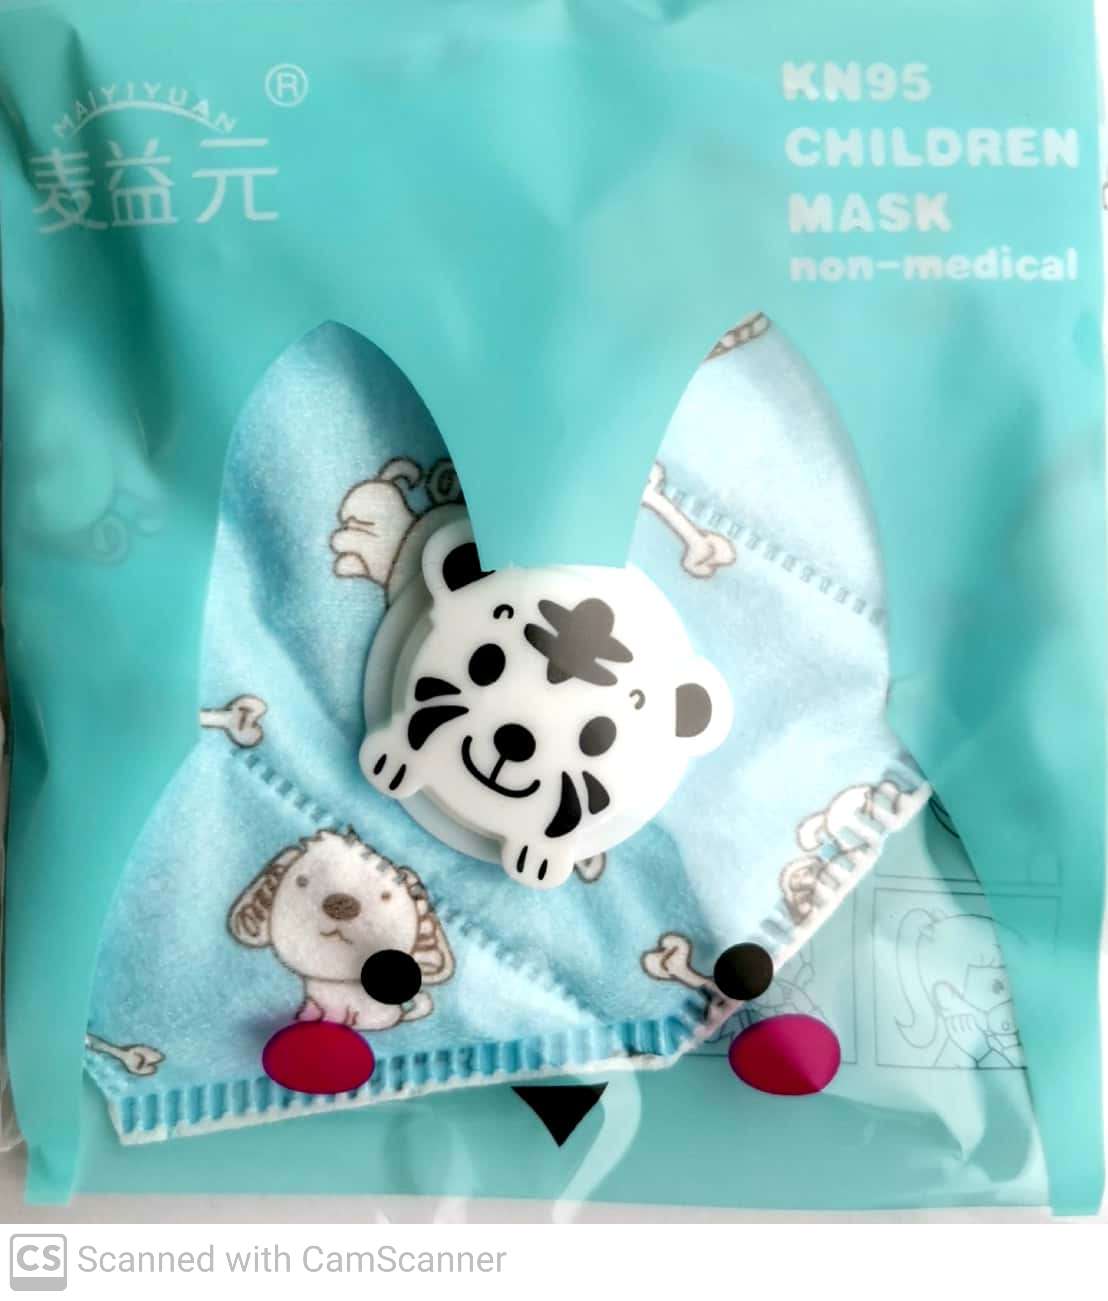 Masca de protectie respiratorie pentru copii, KN95, model cu animale